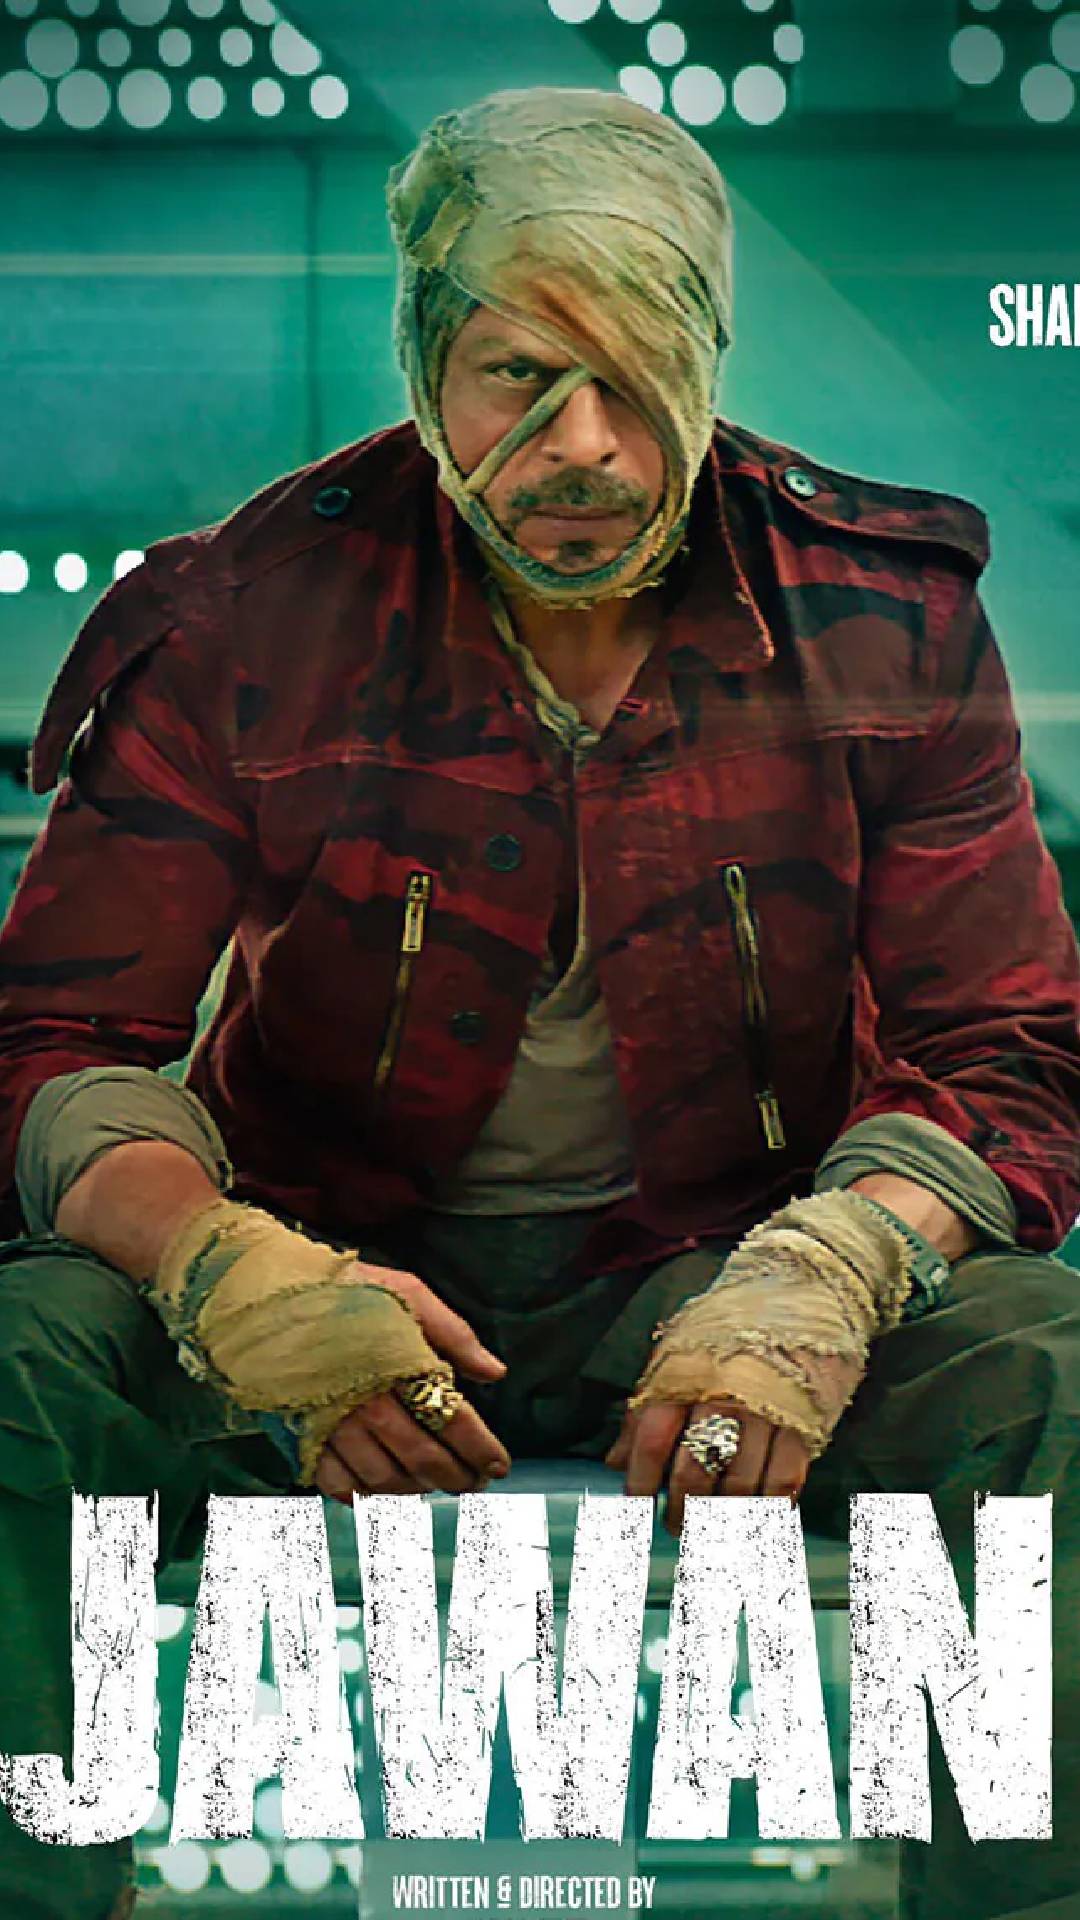 ये 7 बातें जानने के बाद, झट से कर जाएगा शाहरुख खान की 'जवान' देखने का मन